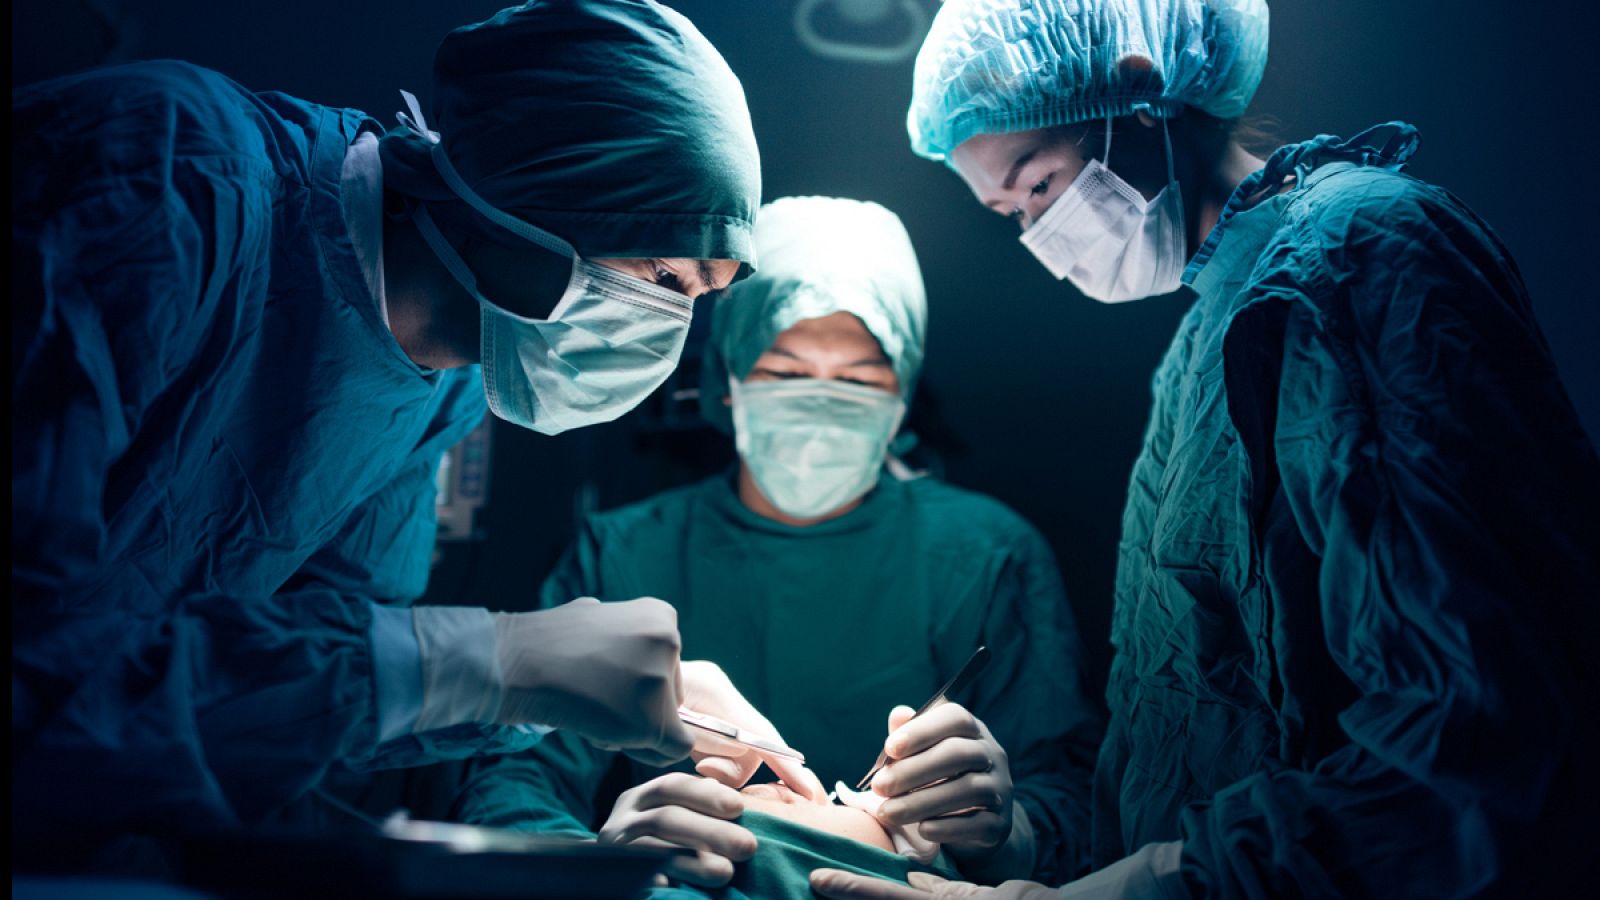 El empleo de células iPS en operaciones quirúrgicas pueden suponer un paso muy importante para el avance de la medicina regenerativa.